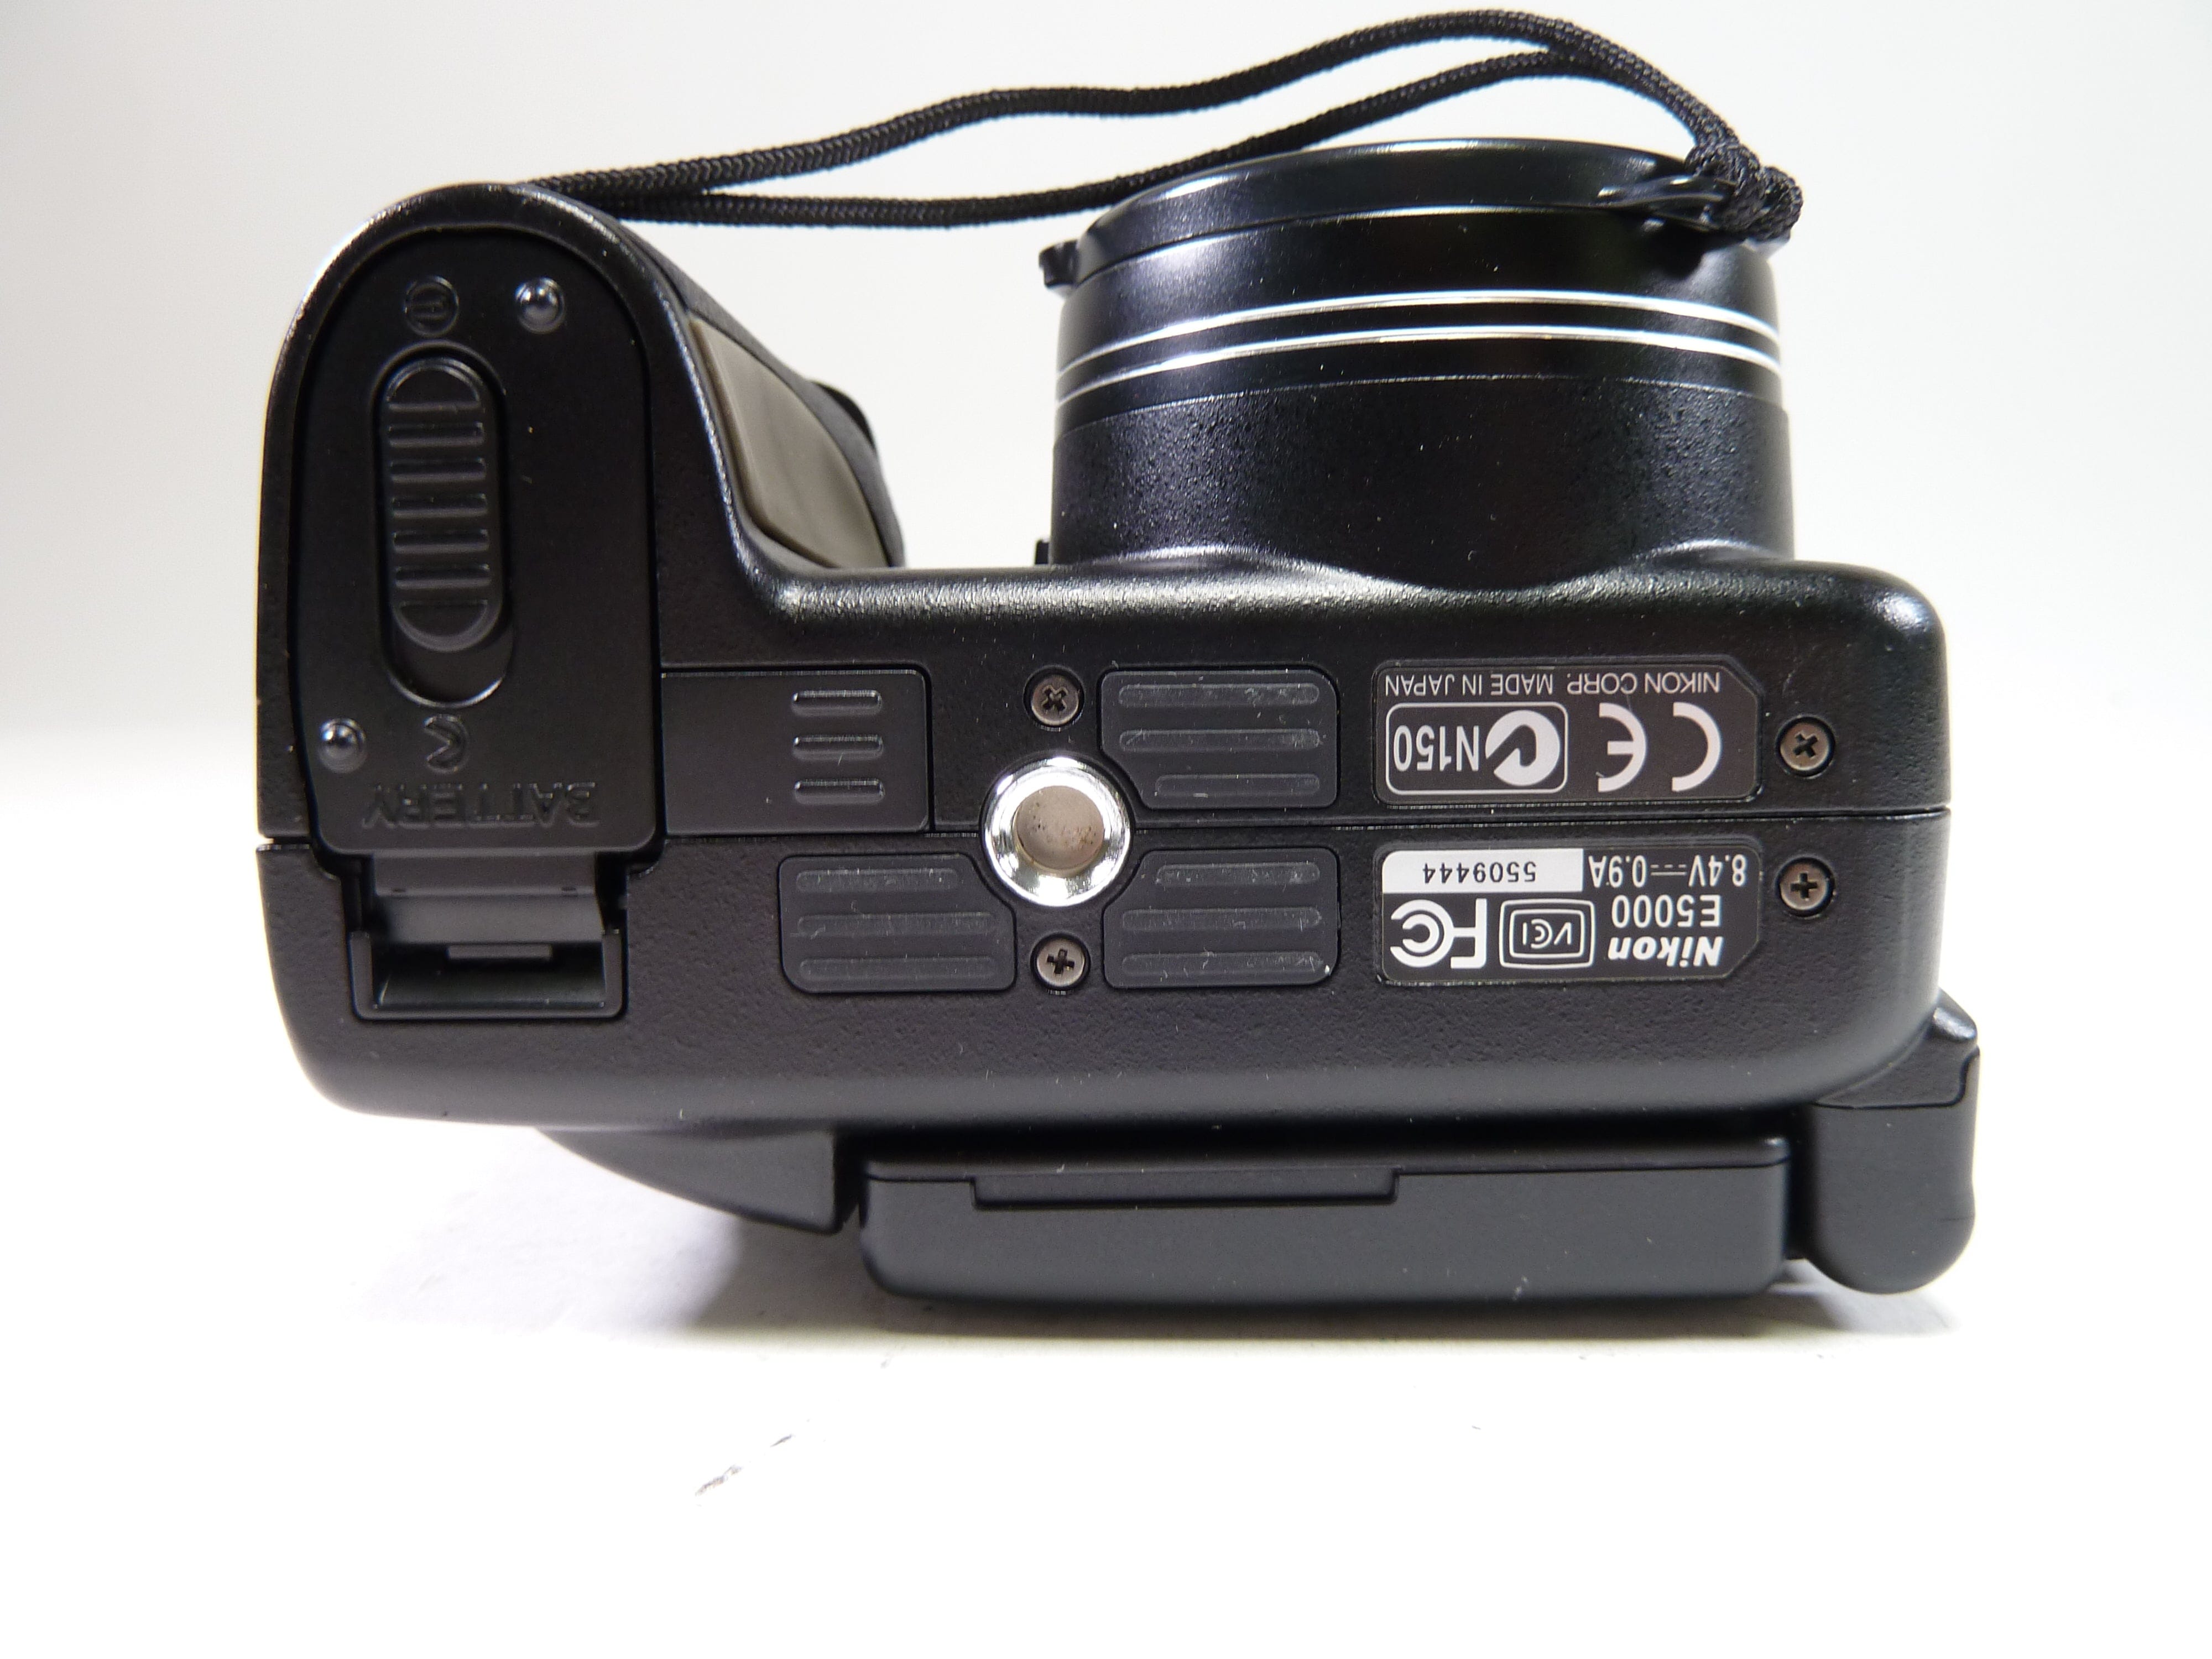 Nikon Coolpix 5000 – Camera Exchange